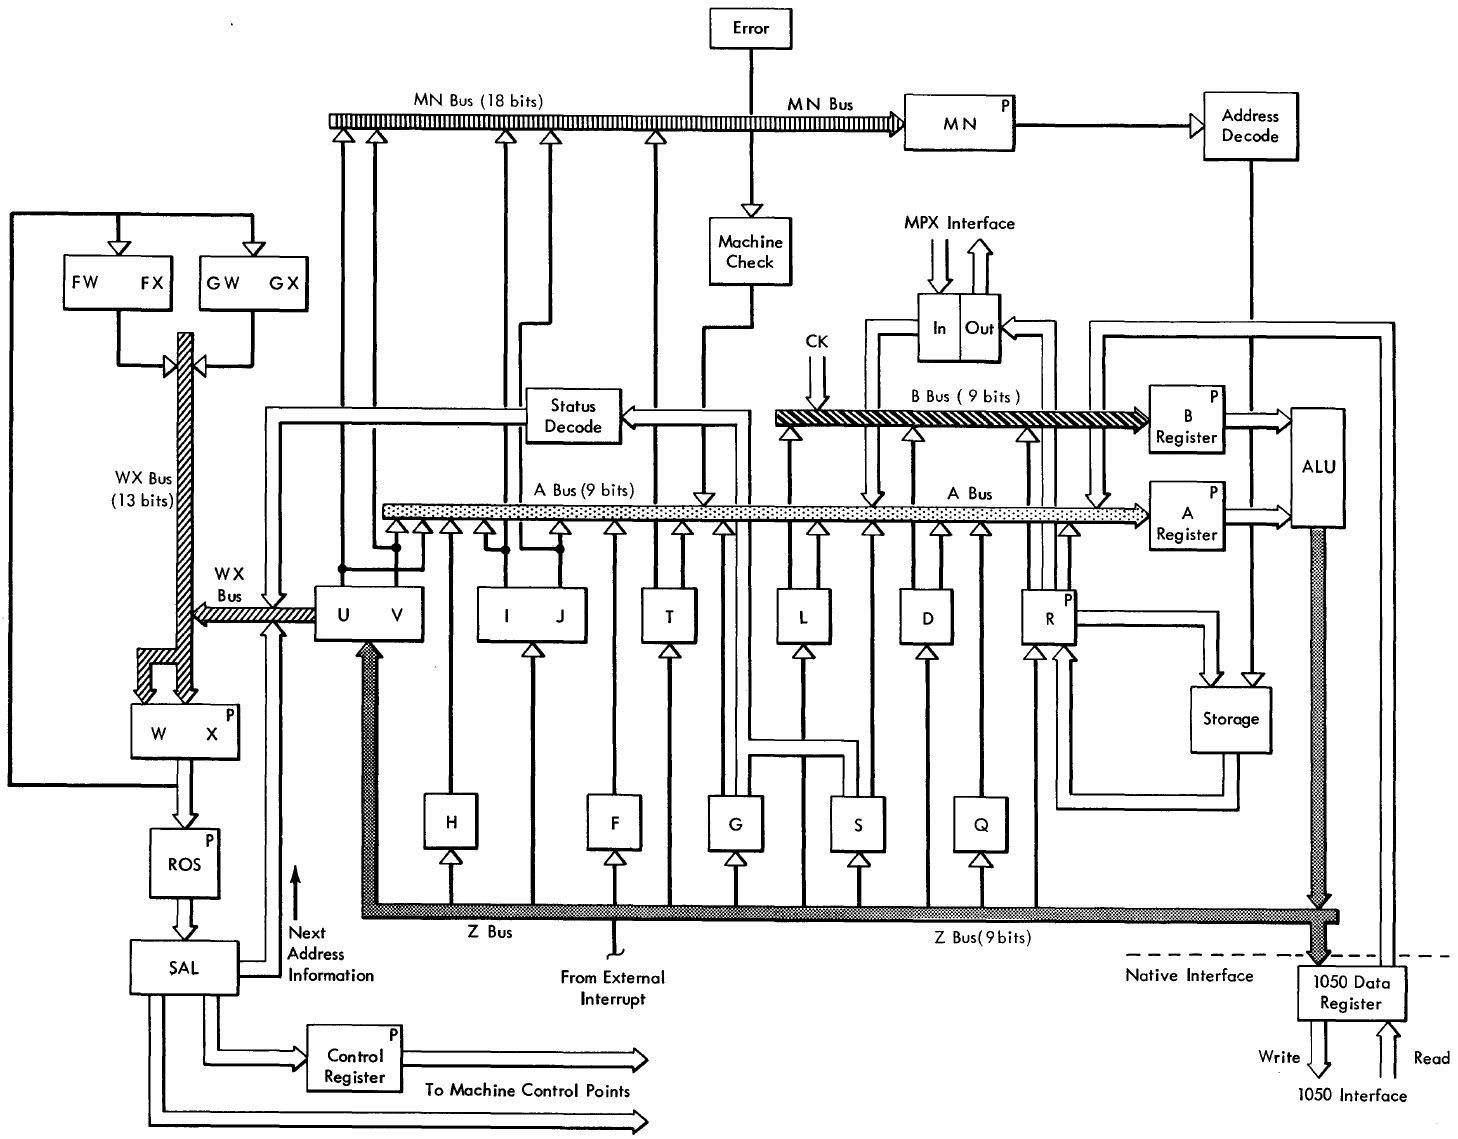 Общая структура и потоки данных процессора IBM 2030, скан из [4]